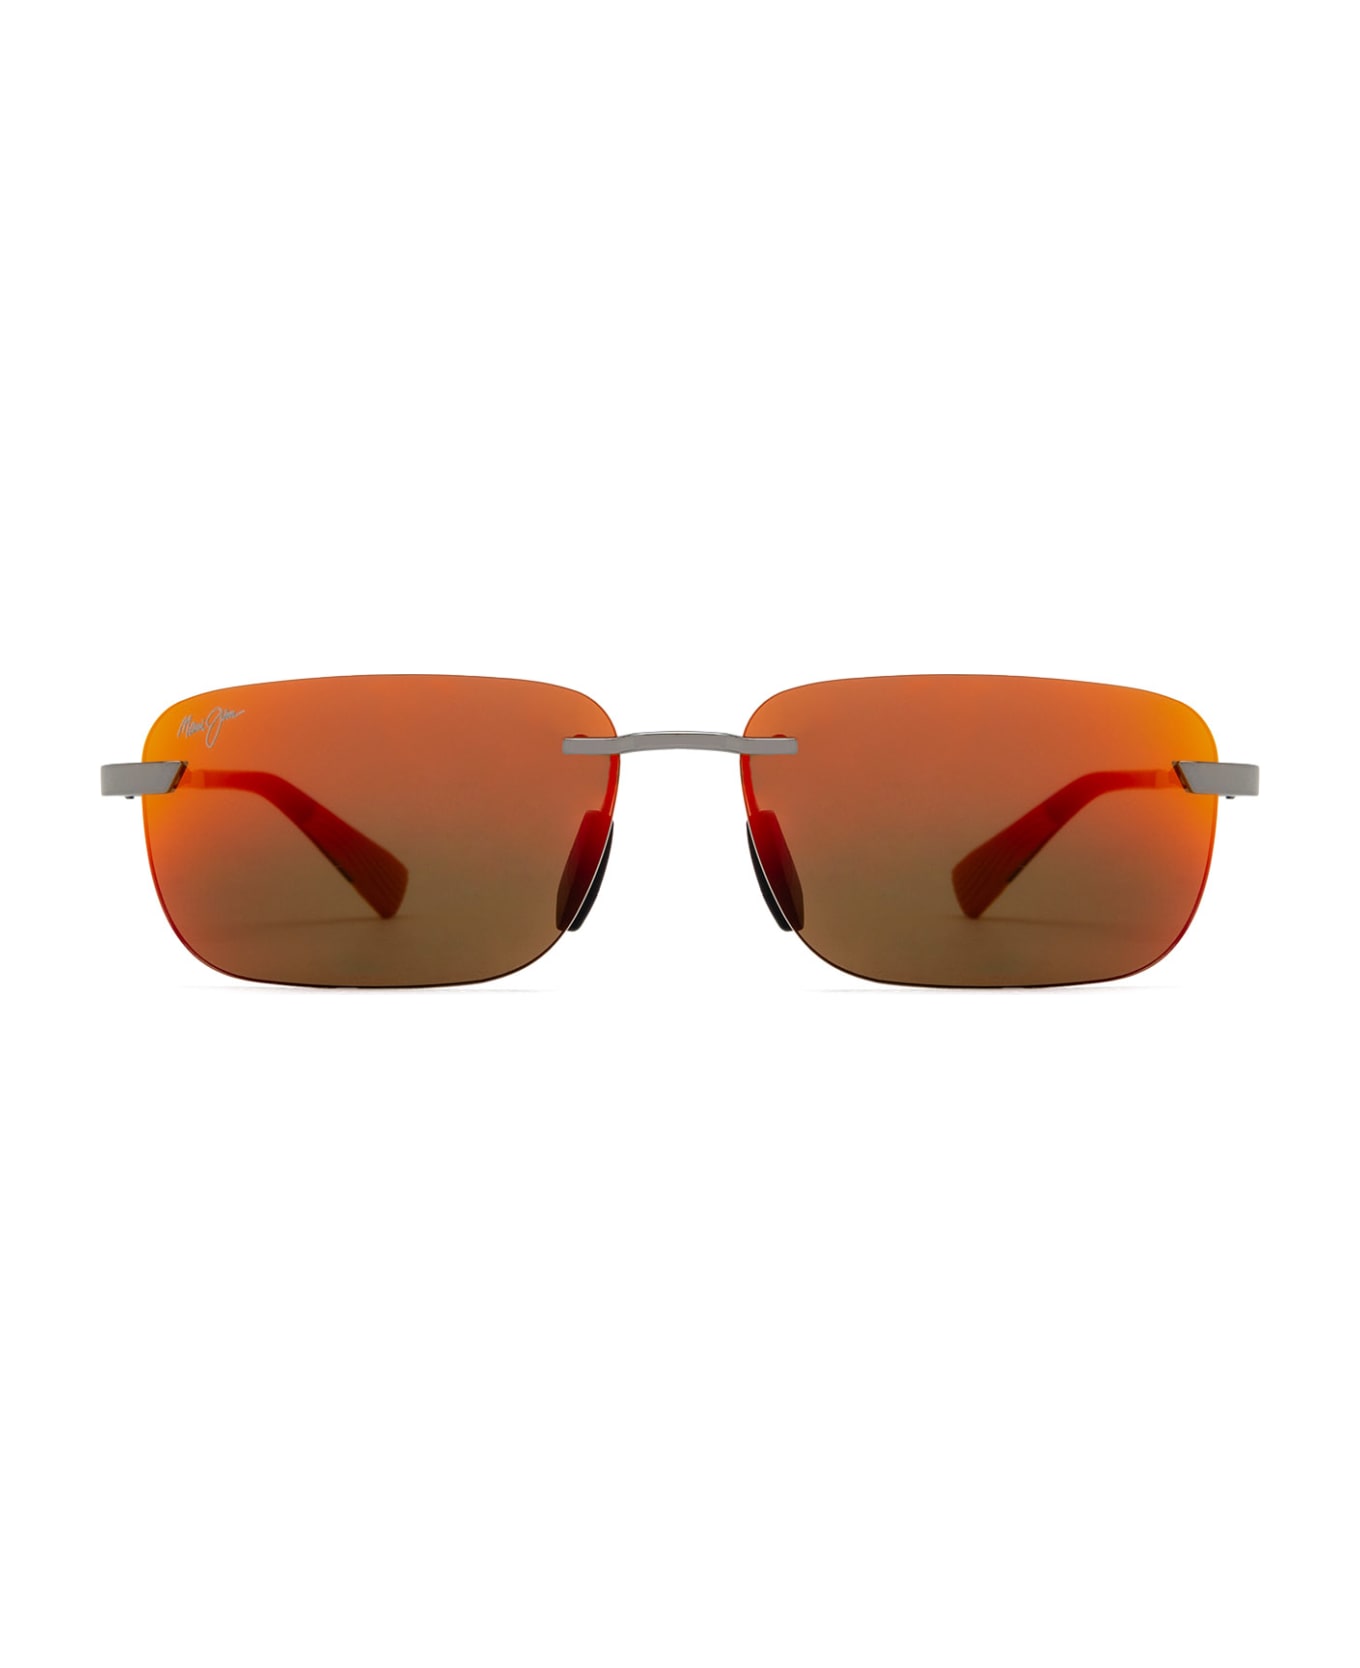 Maui Jim Mj624 Shiny Light Ruthenium Sunglasses - Shiny Light Ruthenium